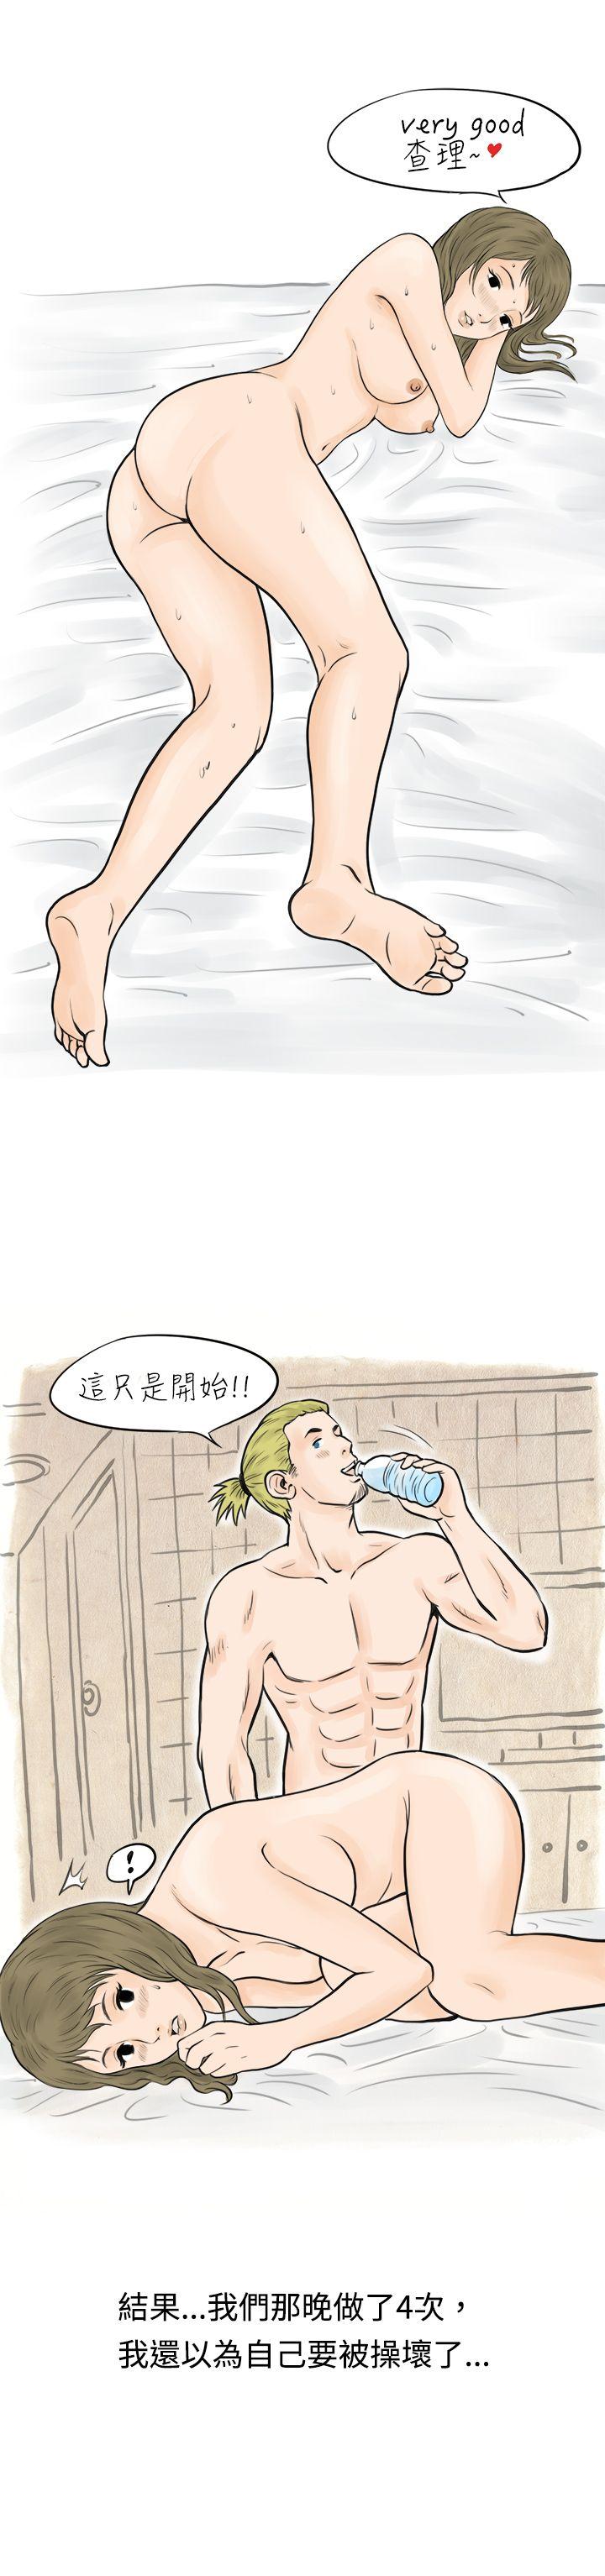 韩国污漫画 秘密Story 在梨泰院游泳池中的小故事(下) 13